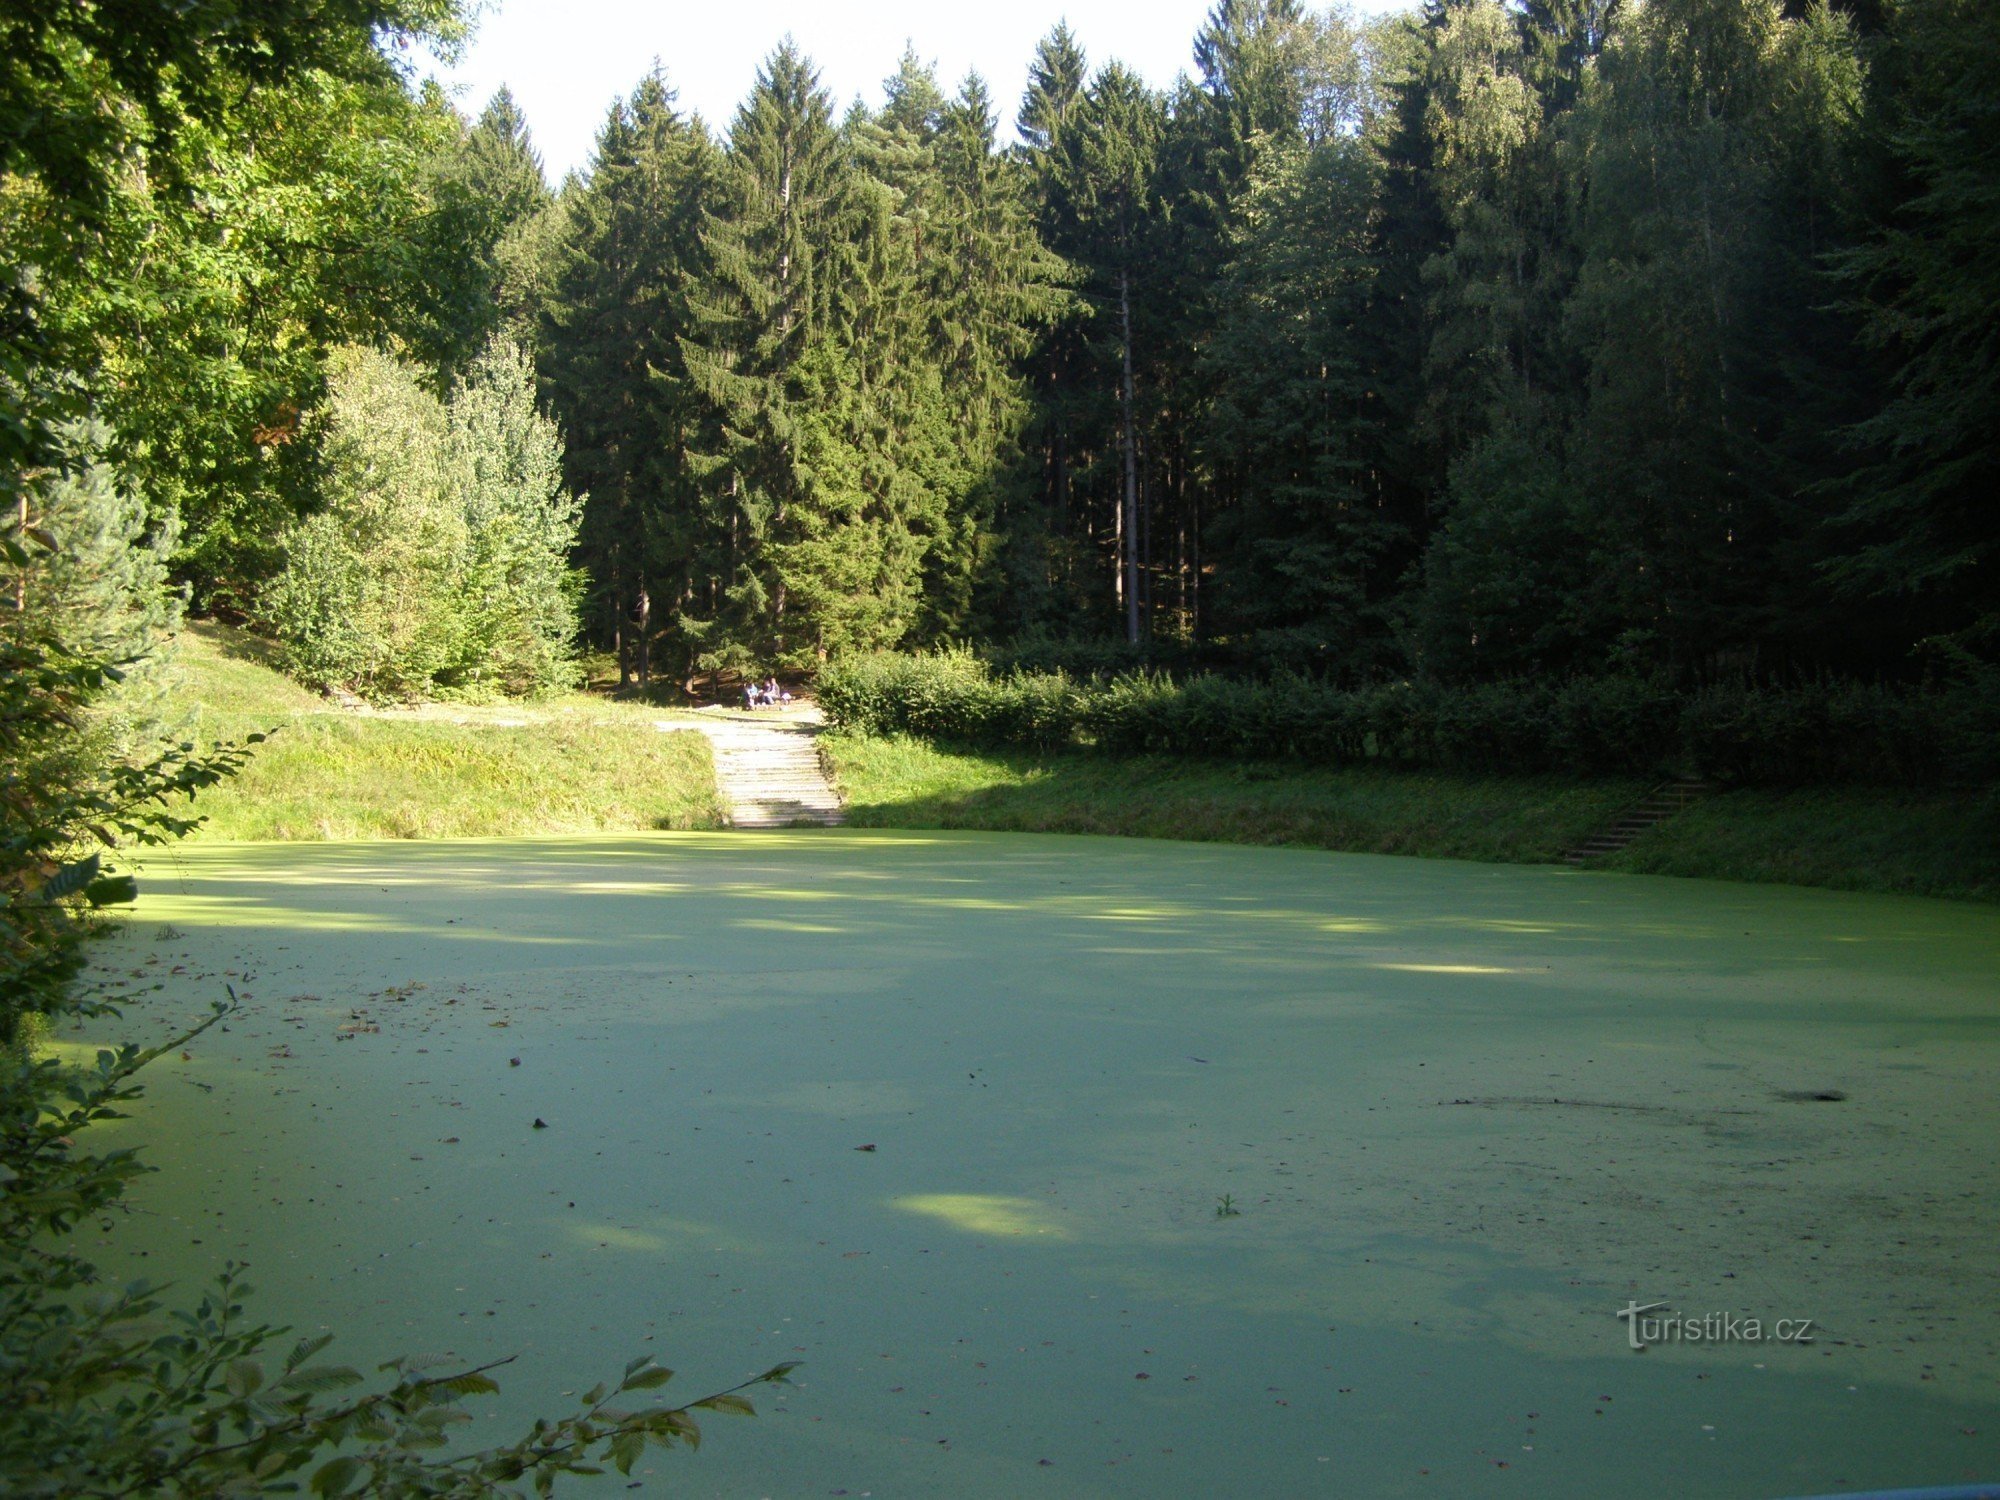 Prachovské skály - răscruce turistică la piscina U Pelíška